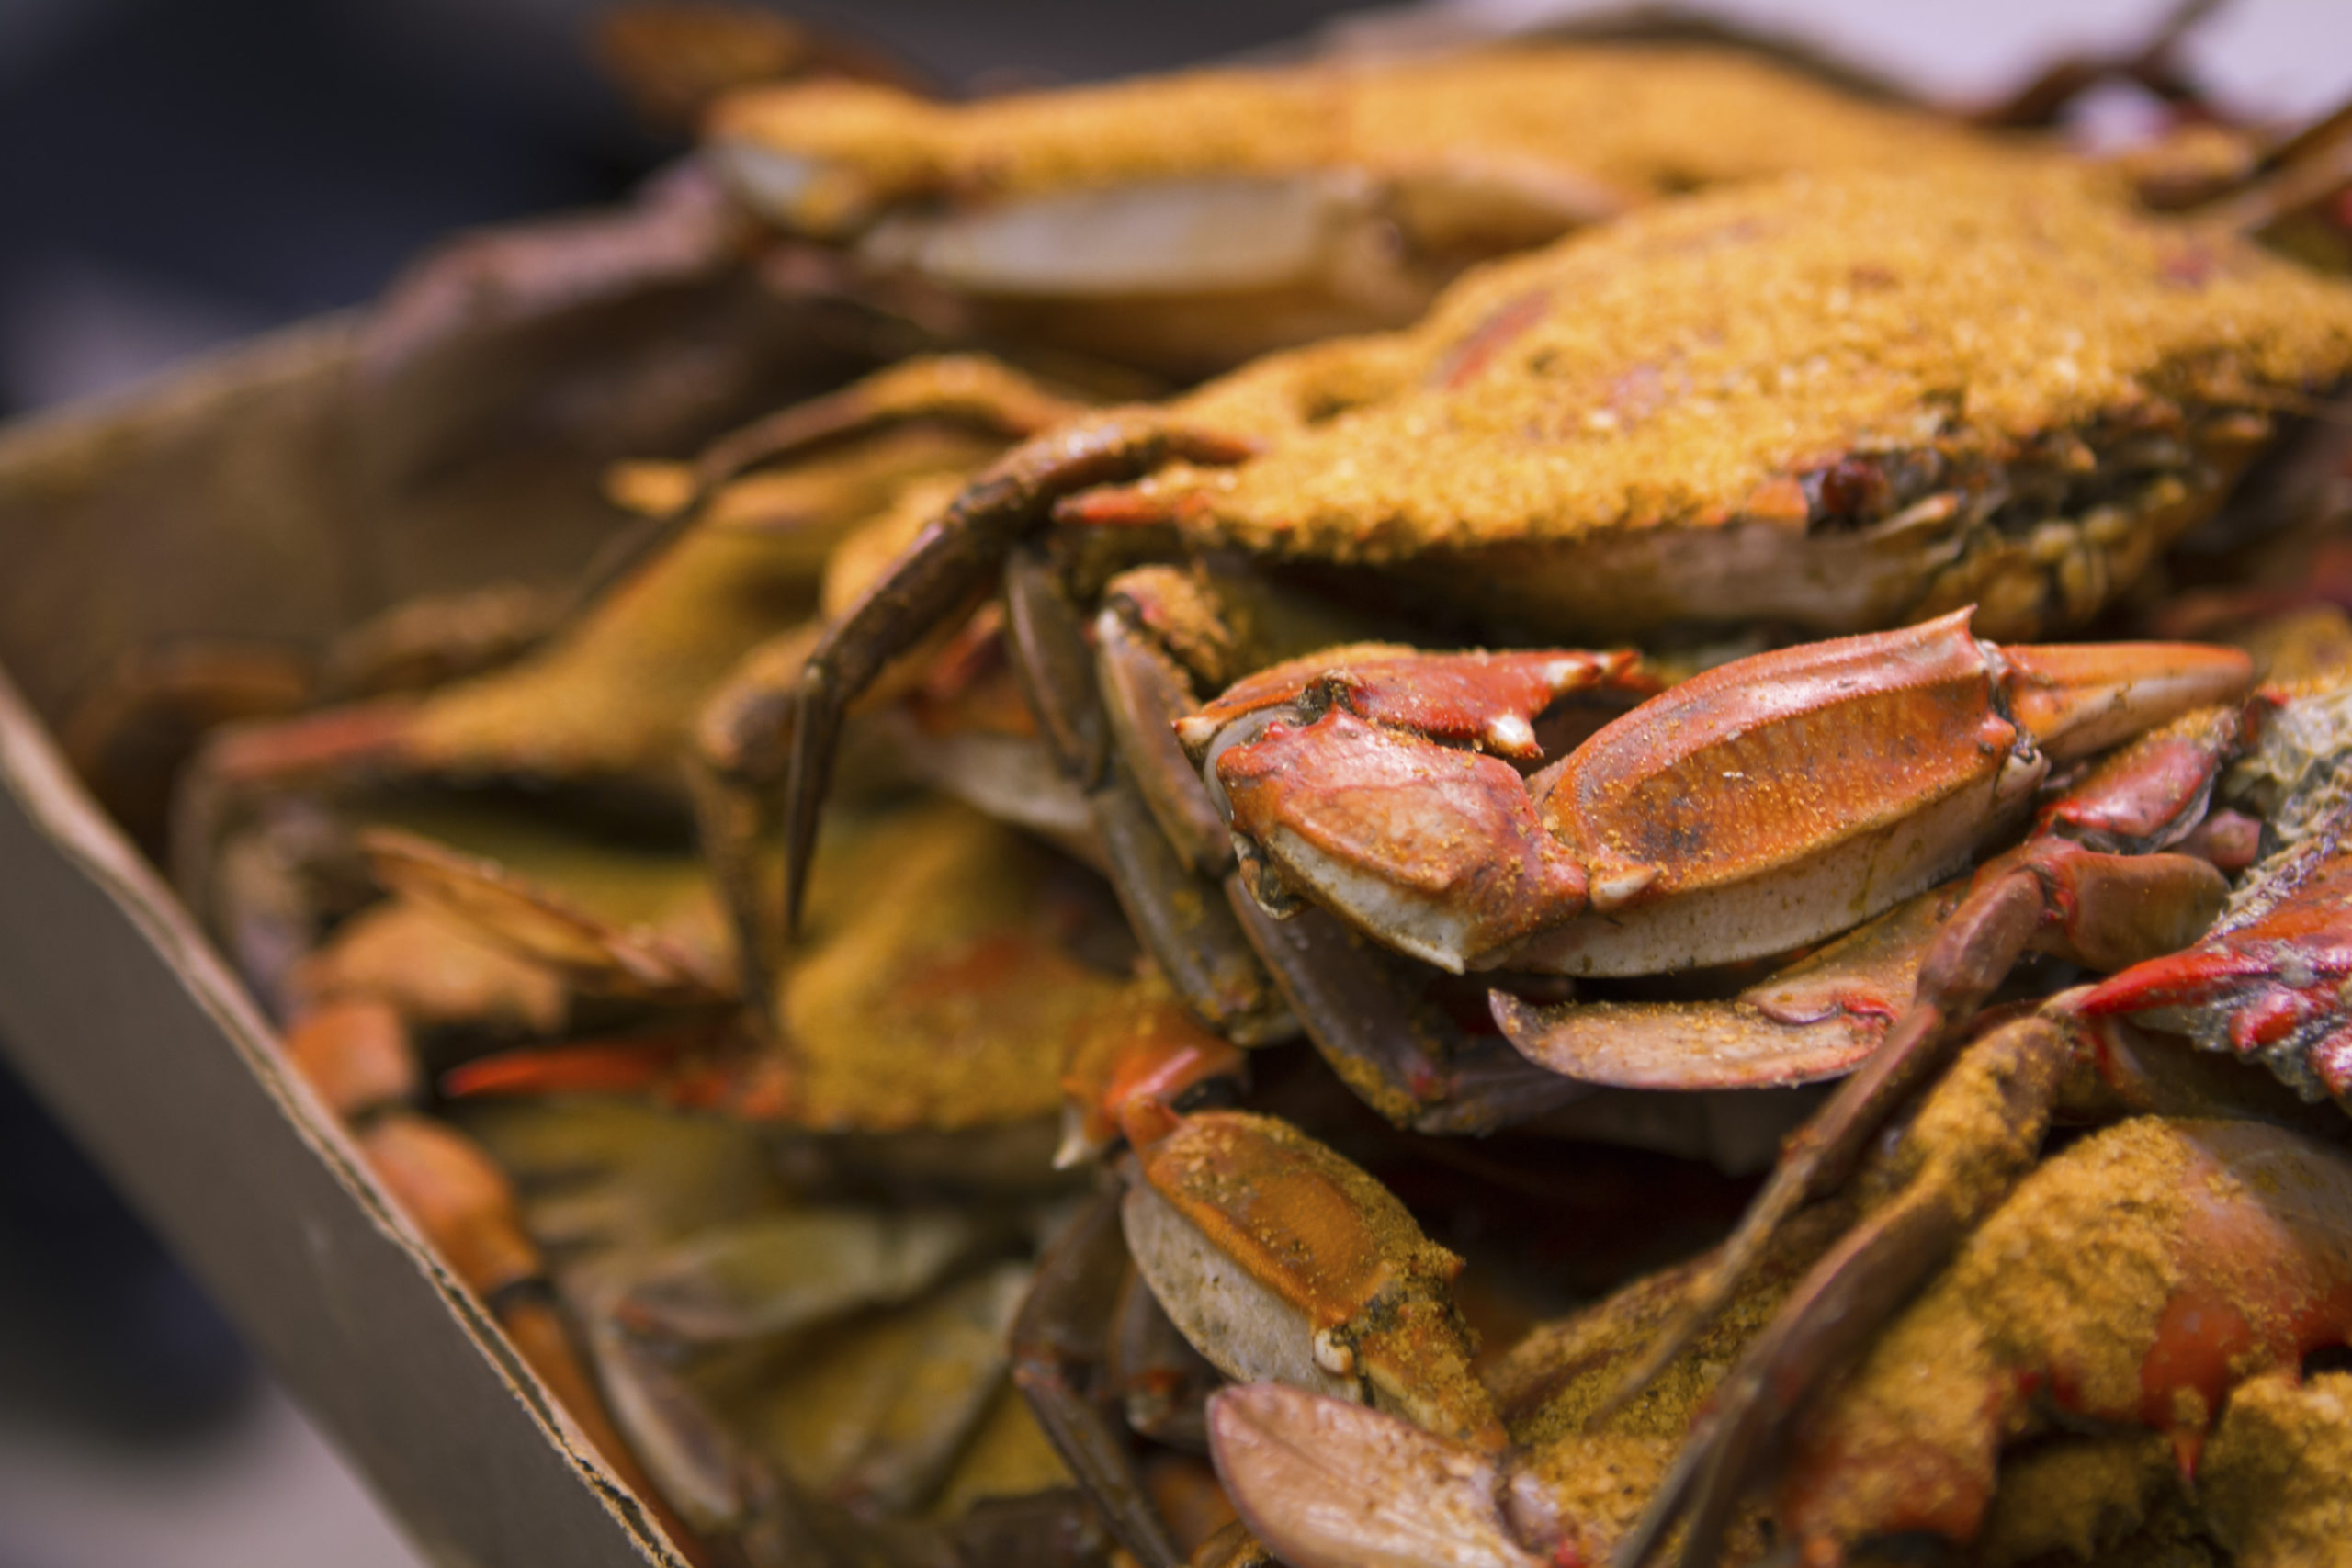 April 16th… crabs & more